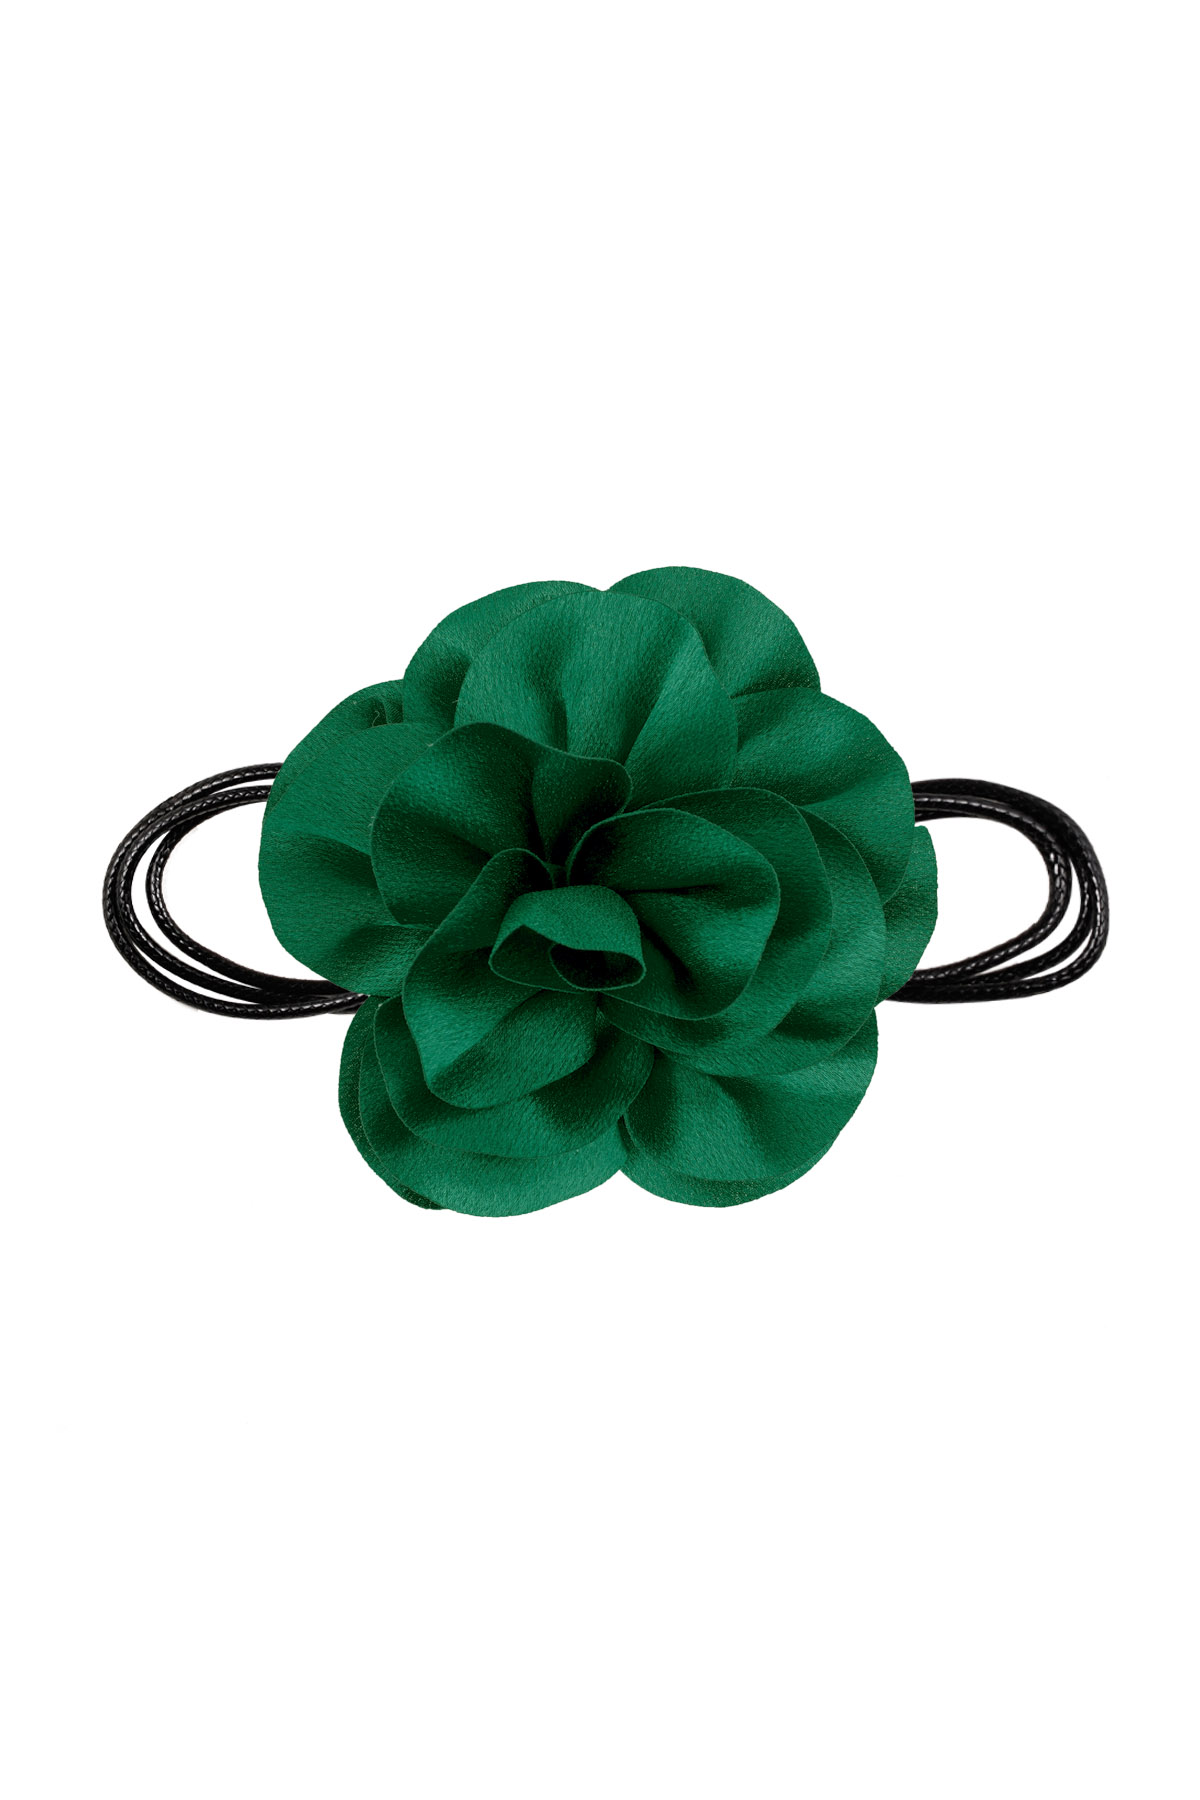 Cadena cuerda flor brillante - verde 